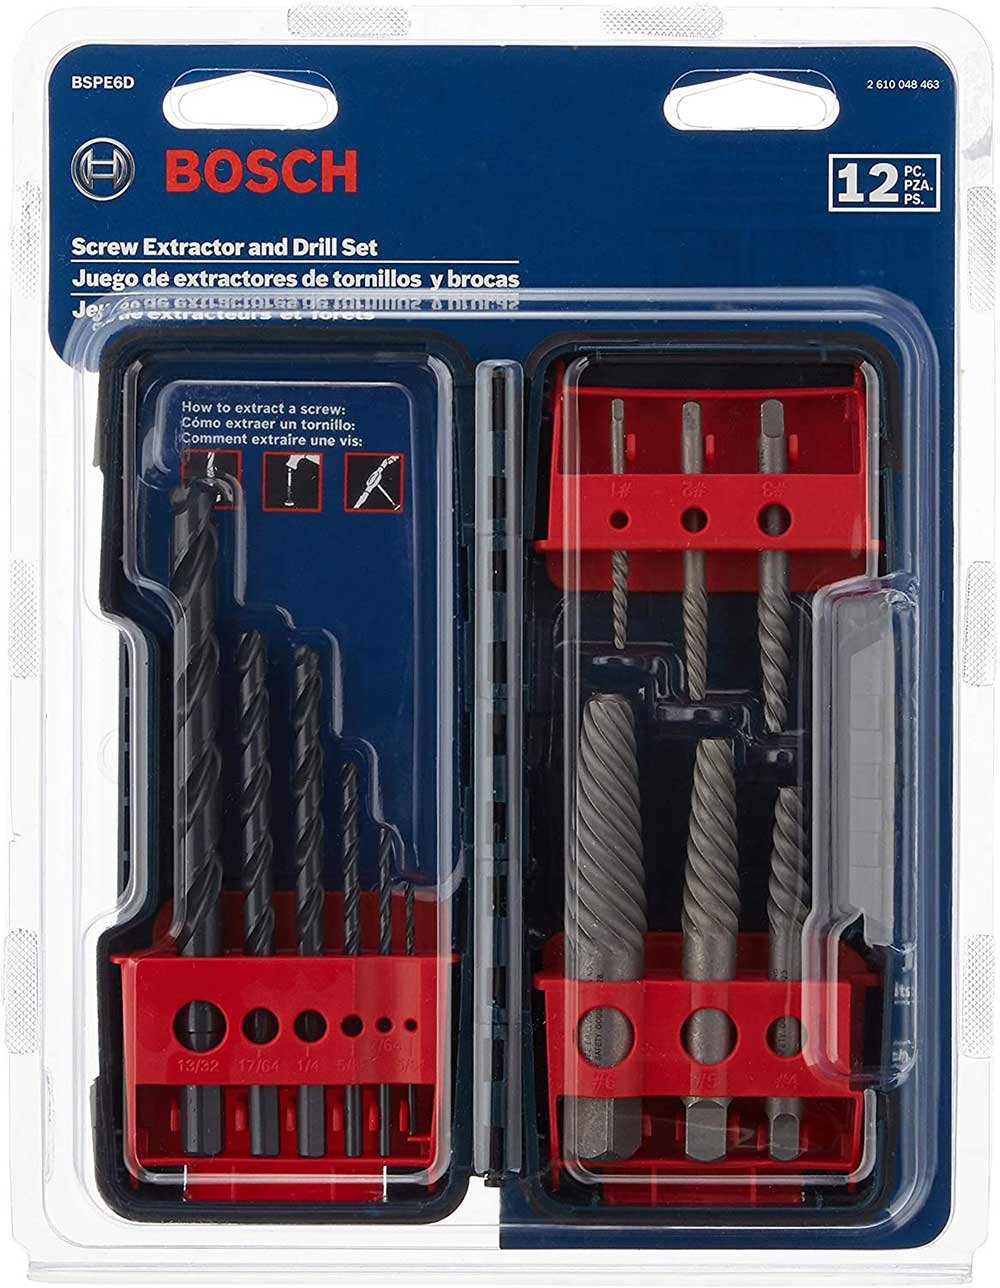 BOSCH BSPE6D Steel Spiral Flute Screw Extractor Set- Best Screw Extractors